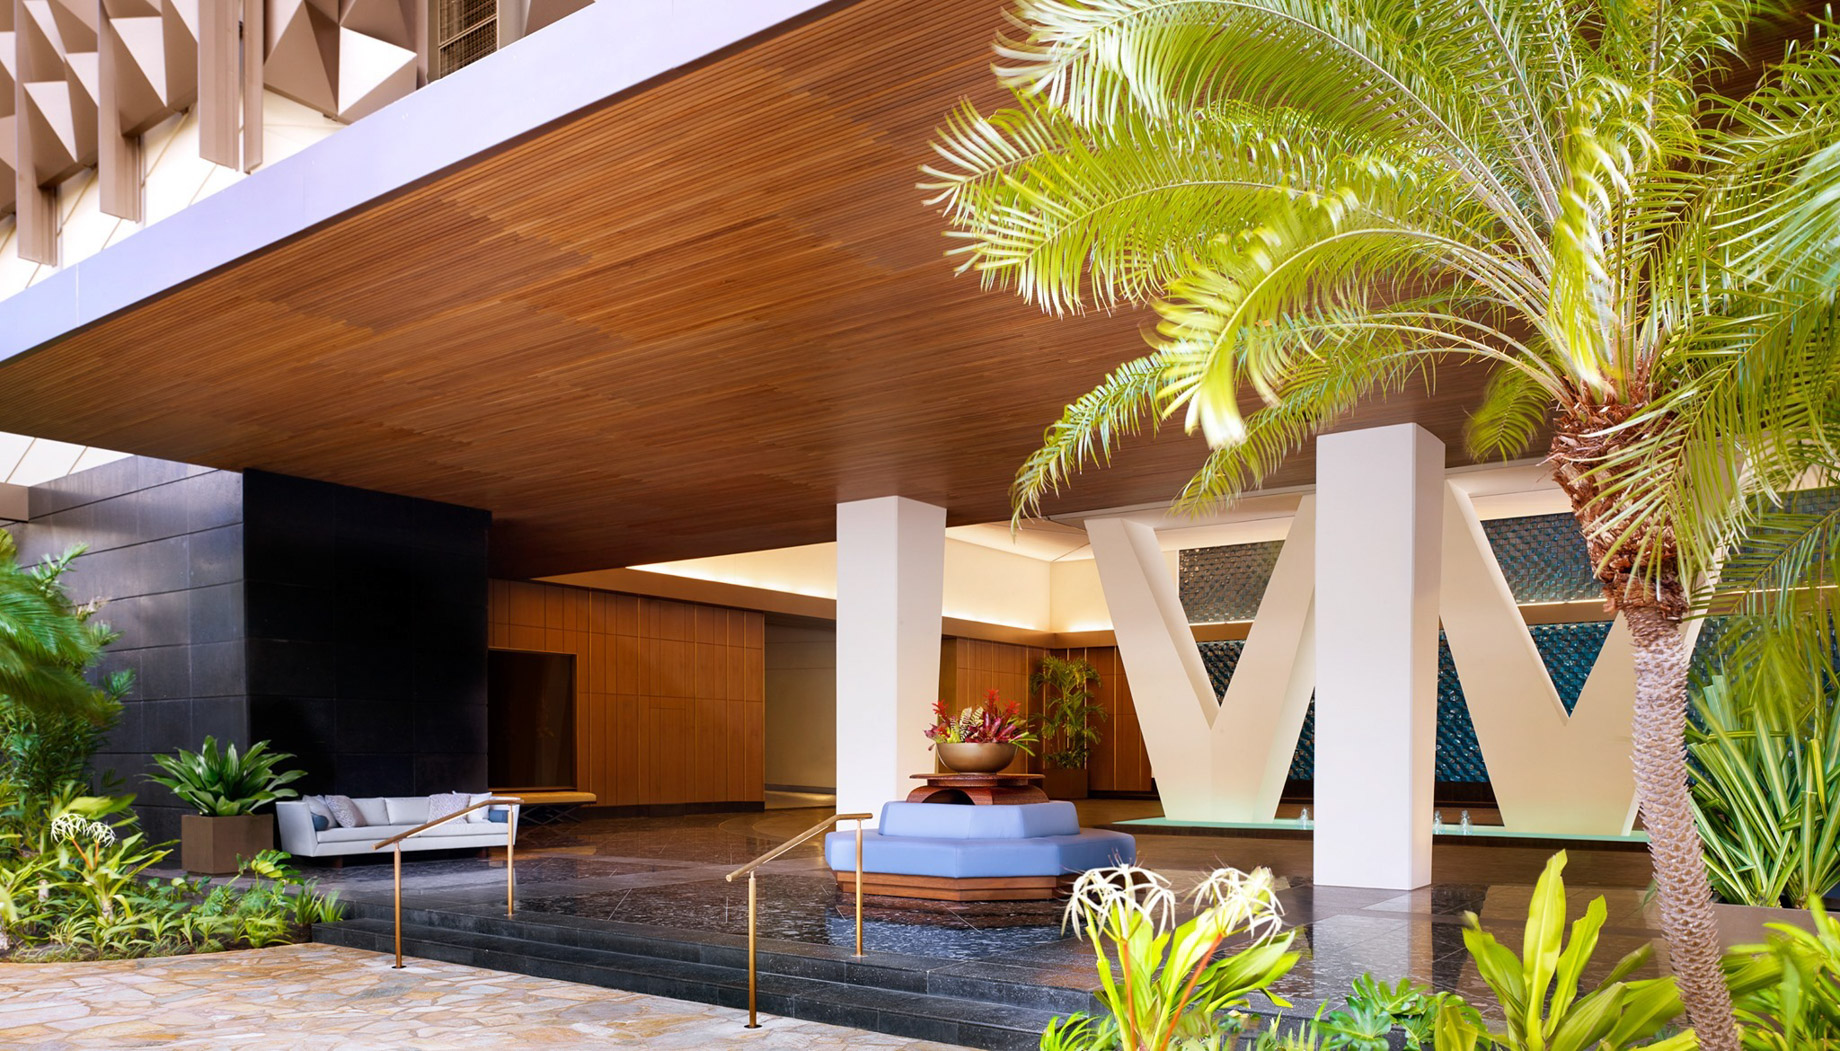 The Ritz-Carlton Residences, Waikiki Beach Hotel – Waikiki, HI, USA – Arrival Porte Cochere